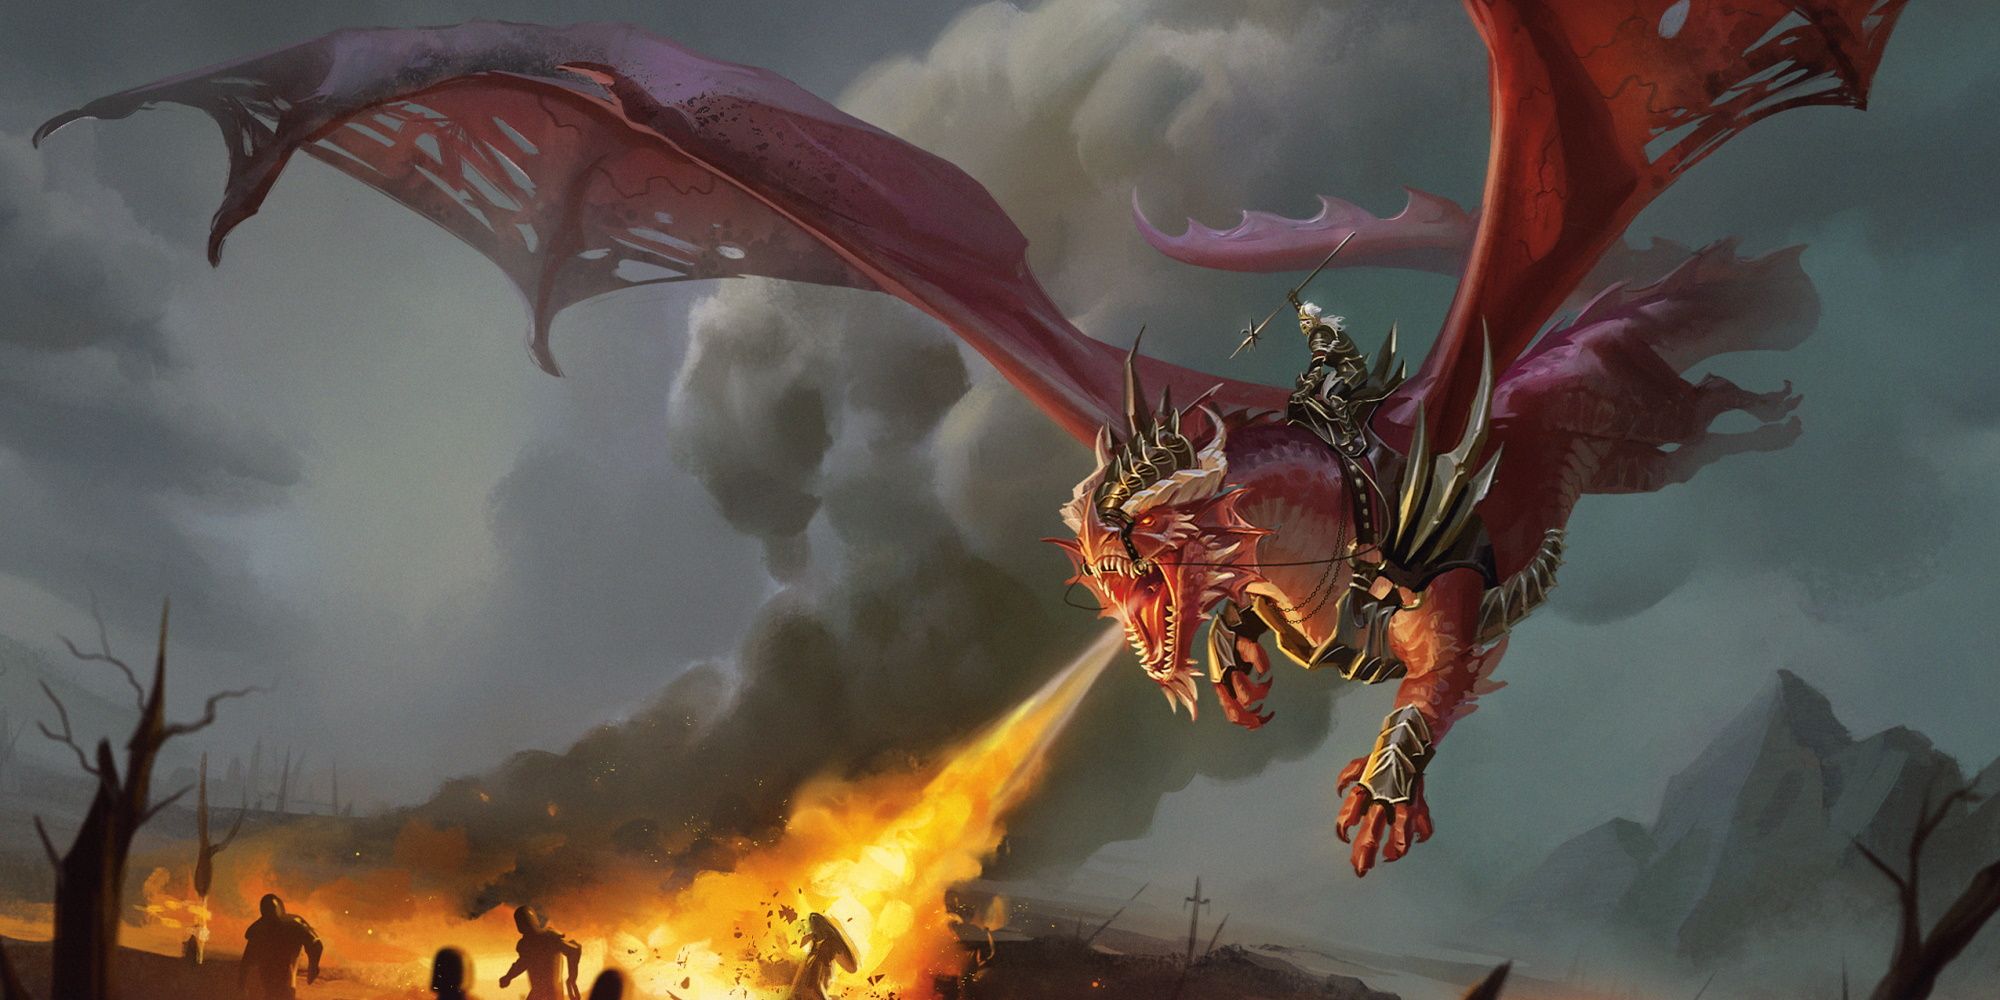 Kansaldi Fire-Eyes rijdt op een draak in DnD's Dragonlance-setting, waarbij de draak vuur spuwt naar vluchtende vijanden beneden.